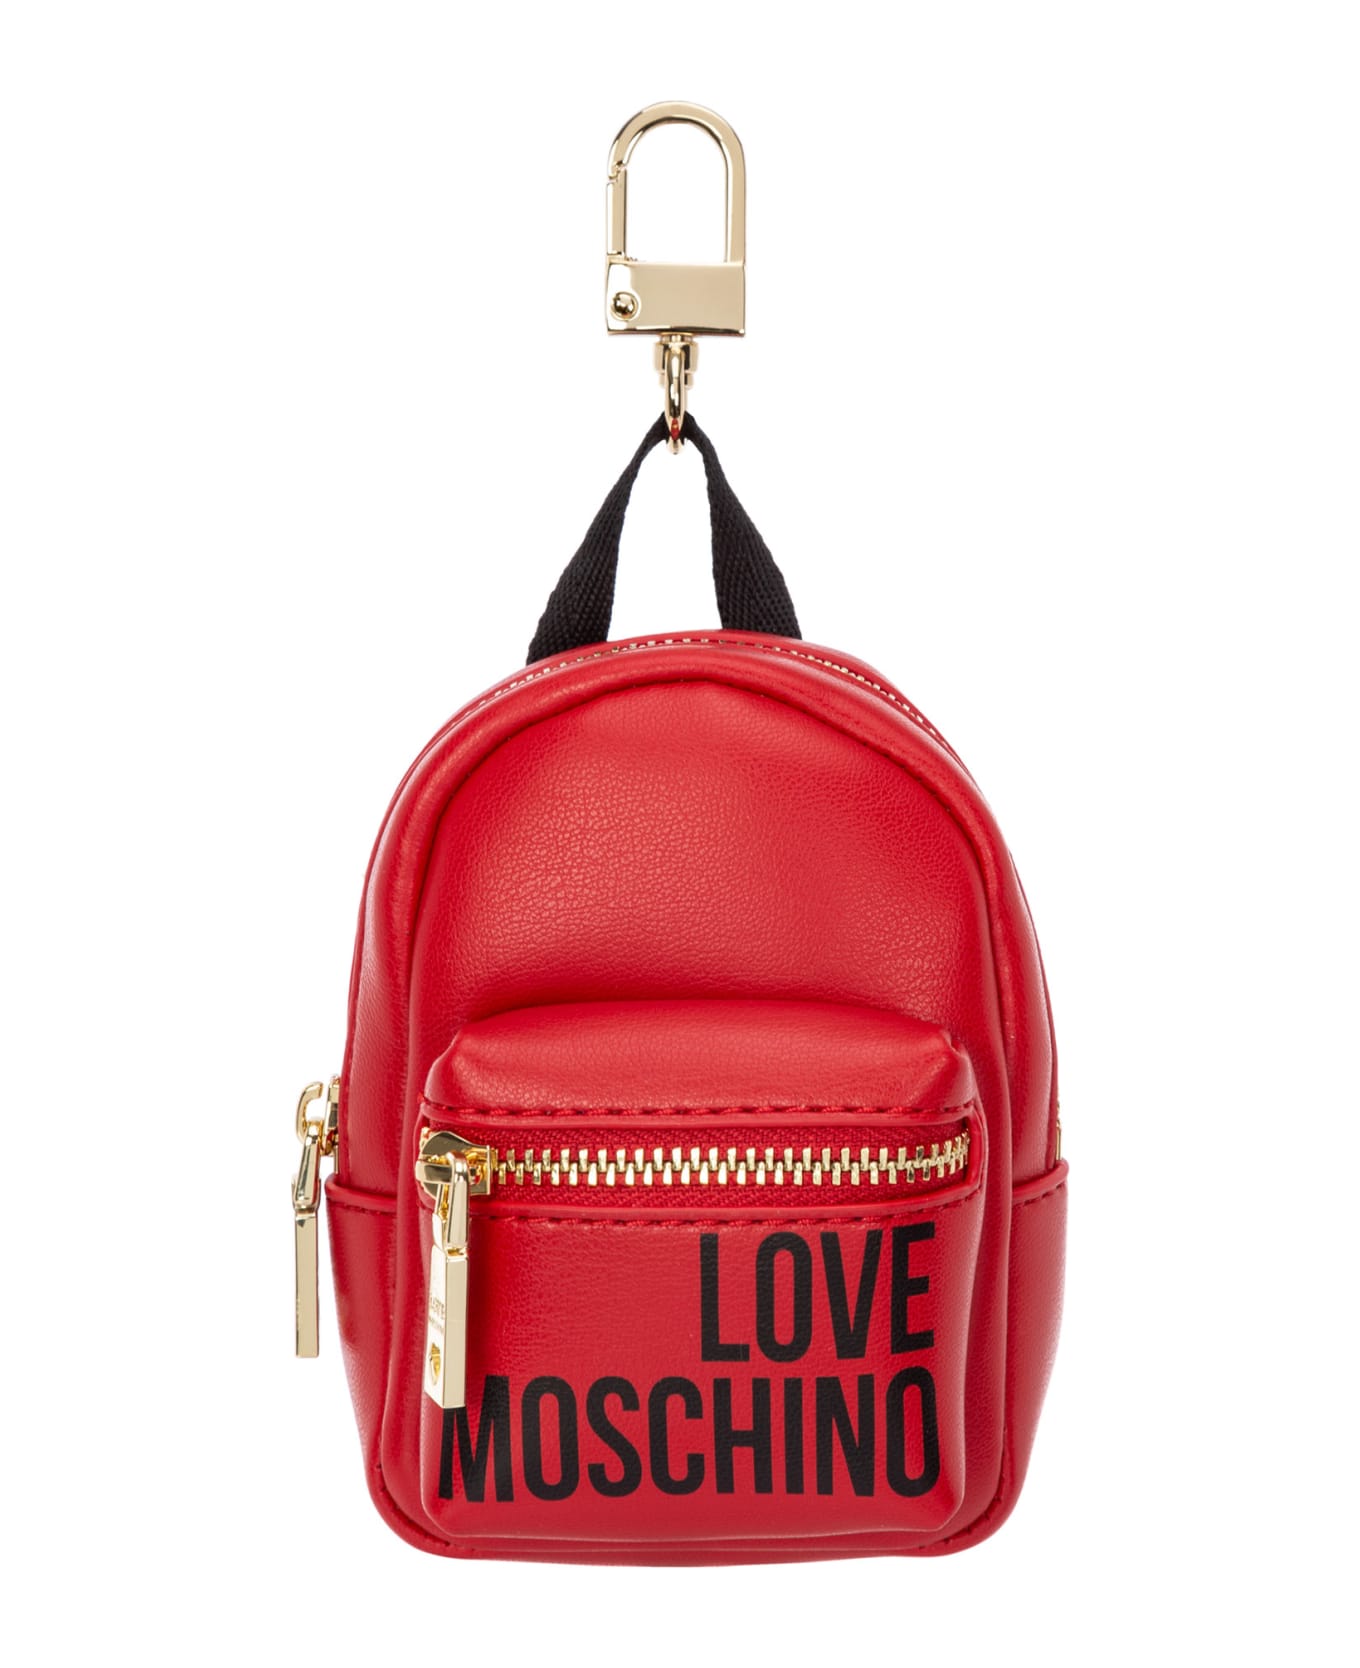 Love Moschino Keychain - Red